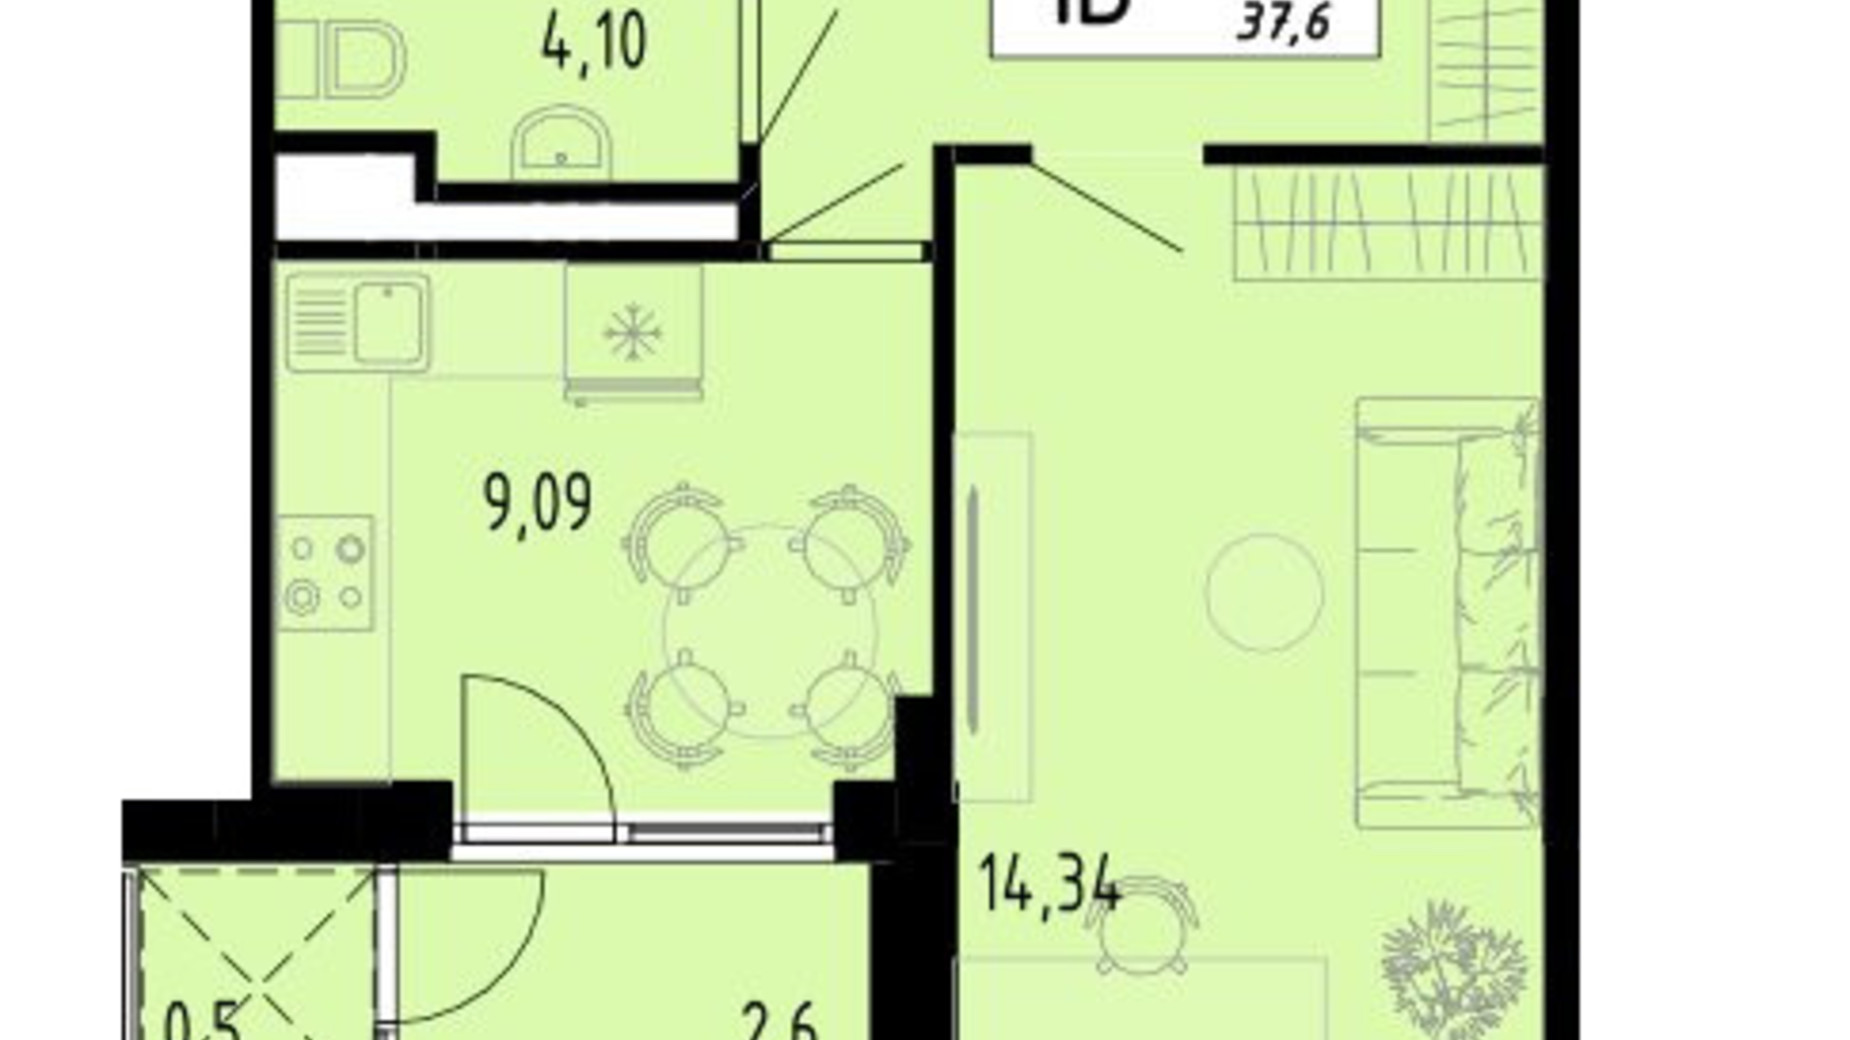 Планировка 1-комнатной квартиры в ЖК Академический 37.6 м², фото 597431